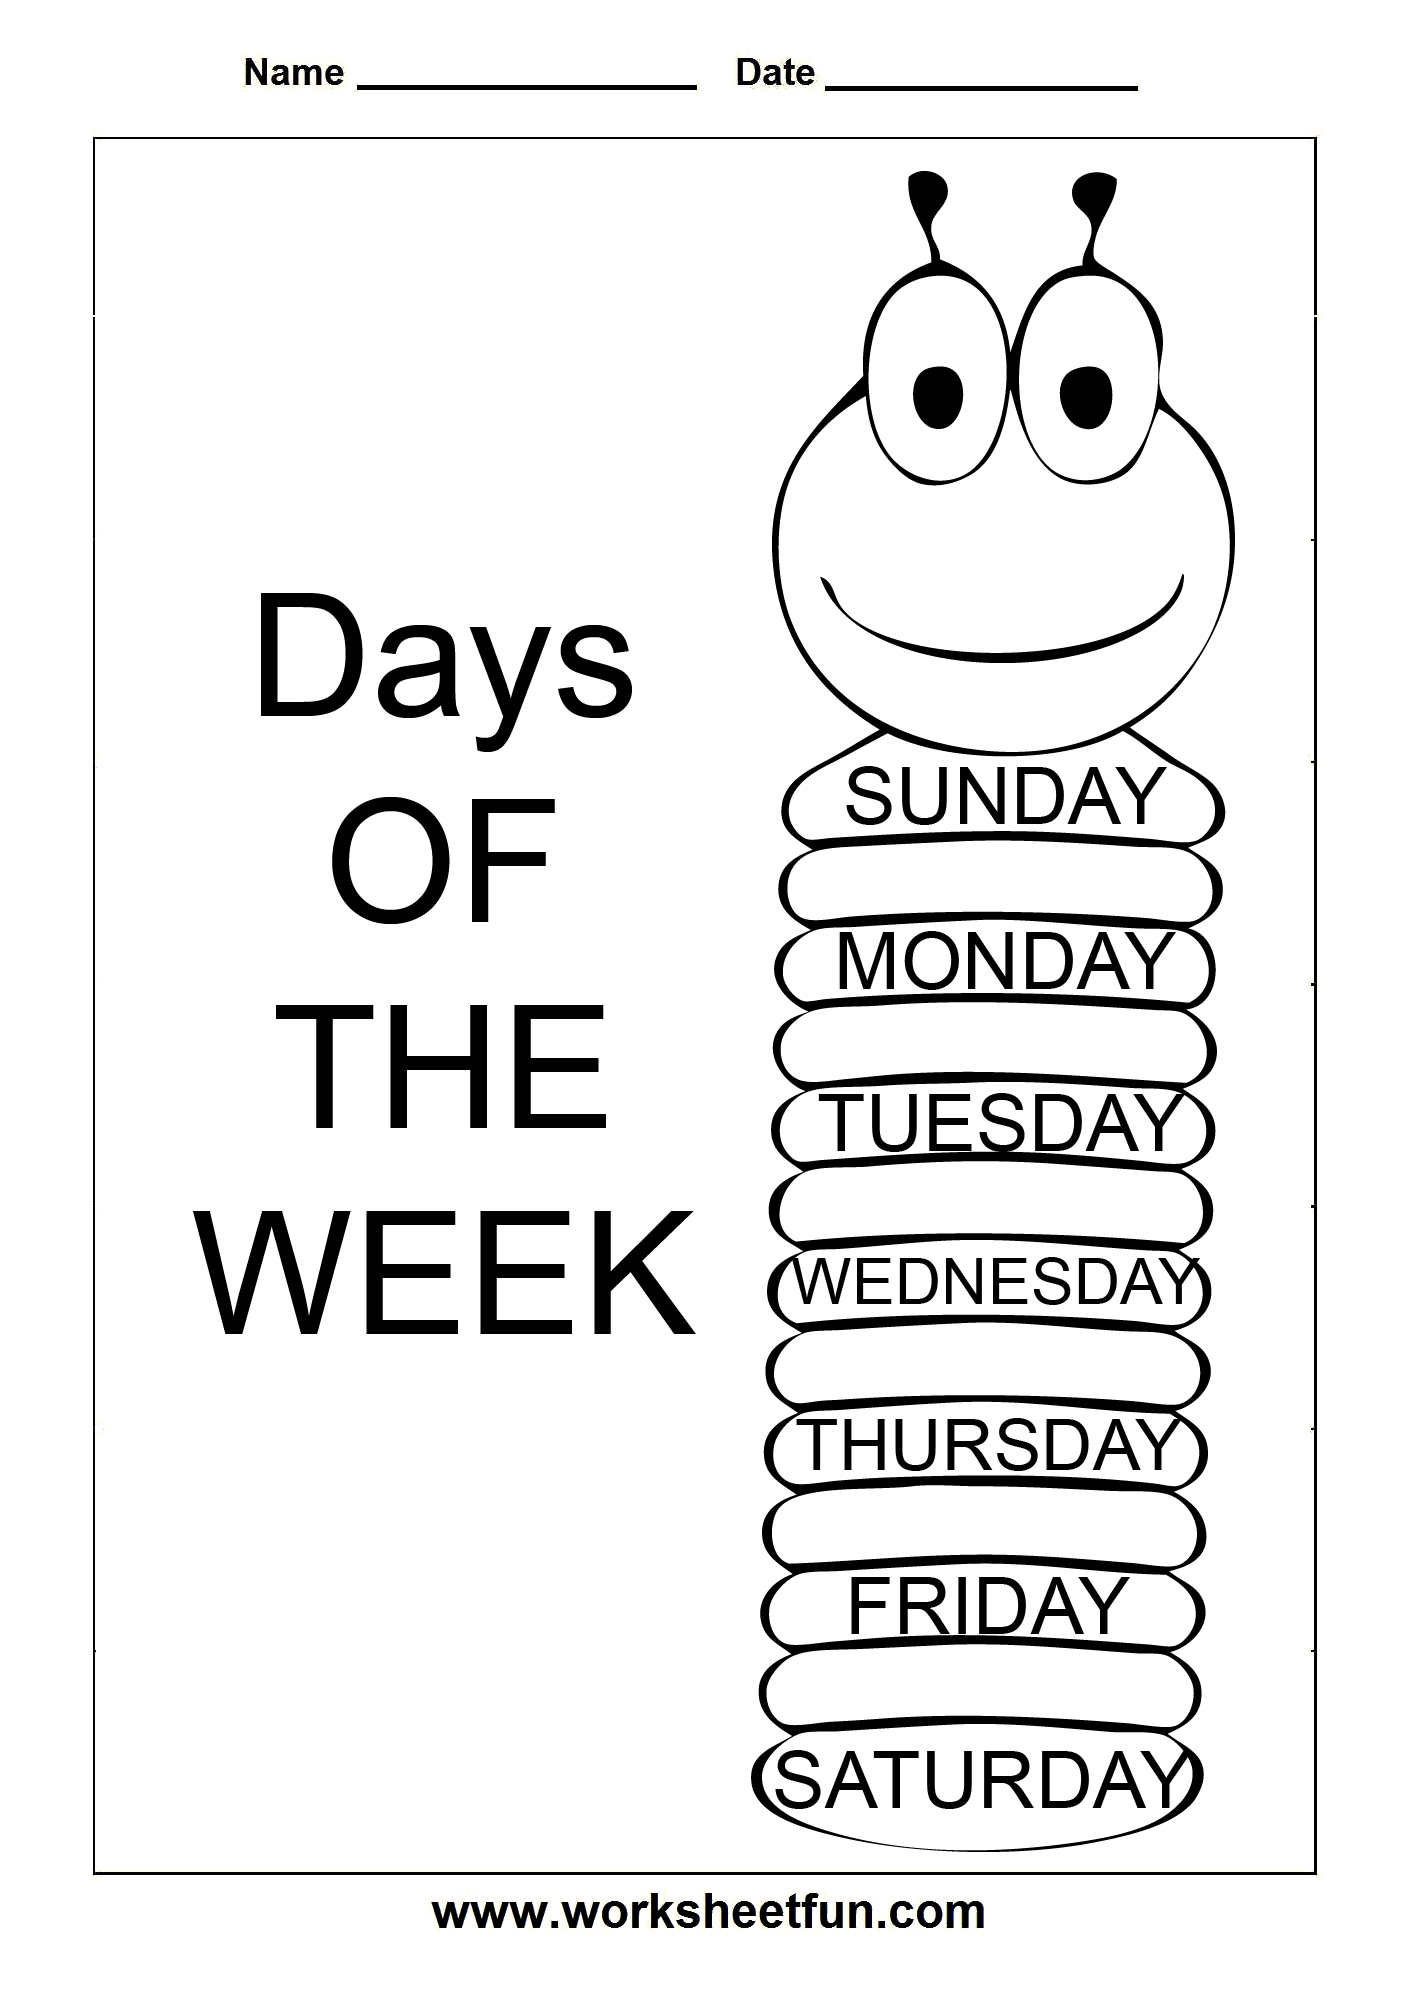 Days Of The Week Worksheets Printable HD